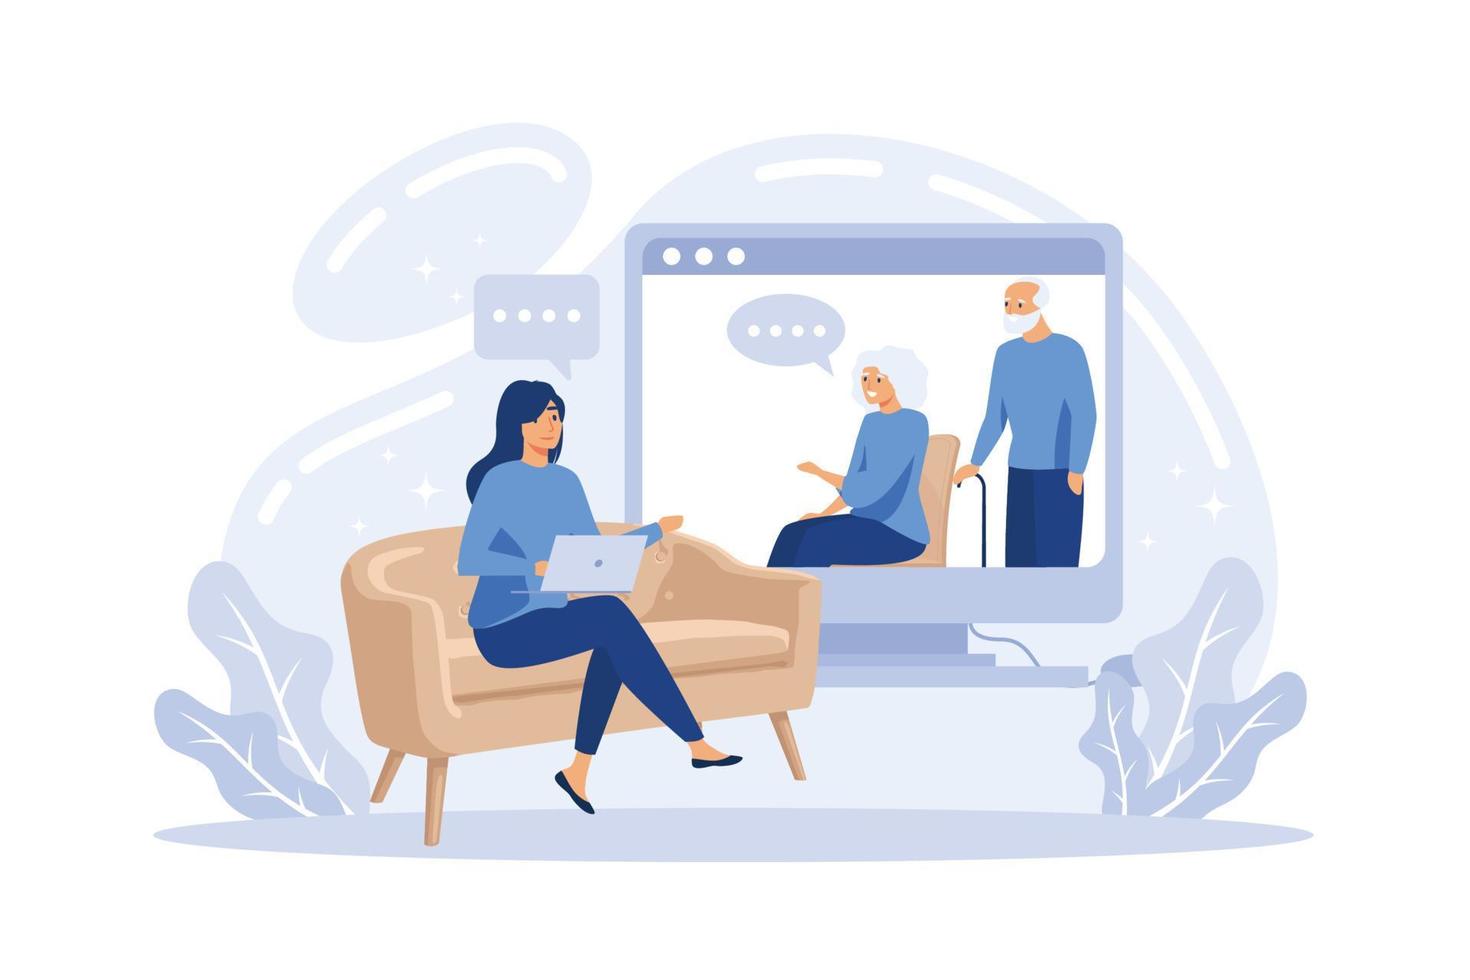 psychologue en ligne et séance de thérapie de couple - femme thérapeute virtuelle faisant des conseils matrimoniaux aux personnes de dessin animé à la maison depuis l'écran, vecteur